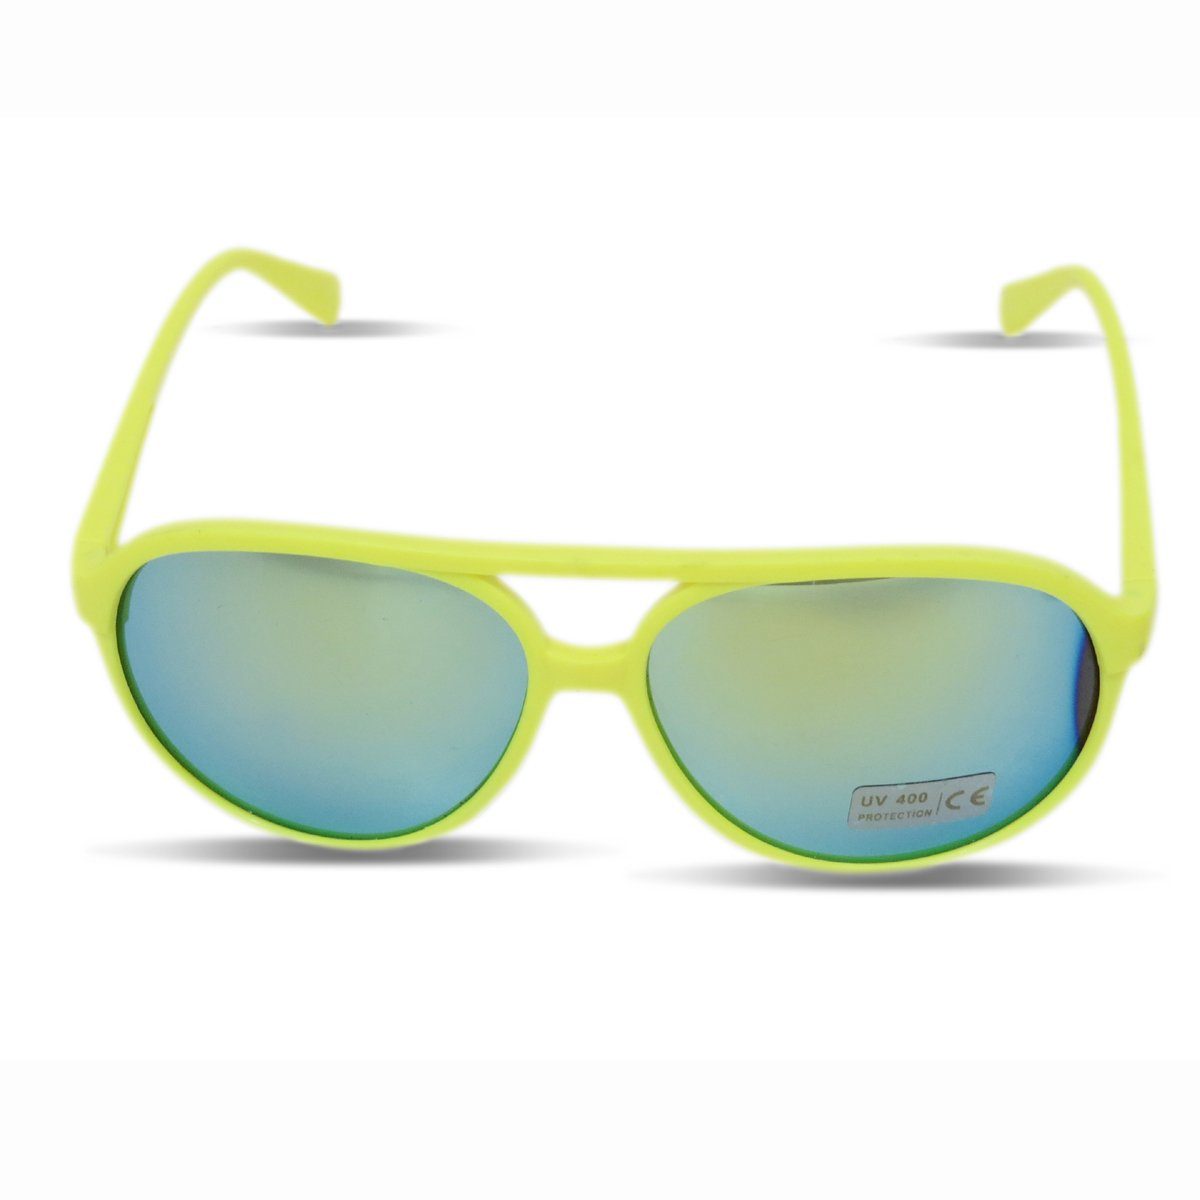 Sonia Originelli Sonnenbrille Sonnenbrille Gläser: Onesize, Knallig Verspiegelt Fun Neon gelb Brille Verspiegelt